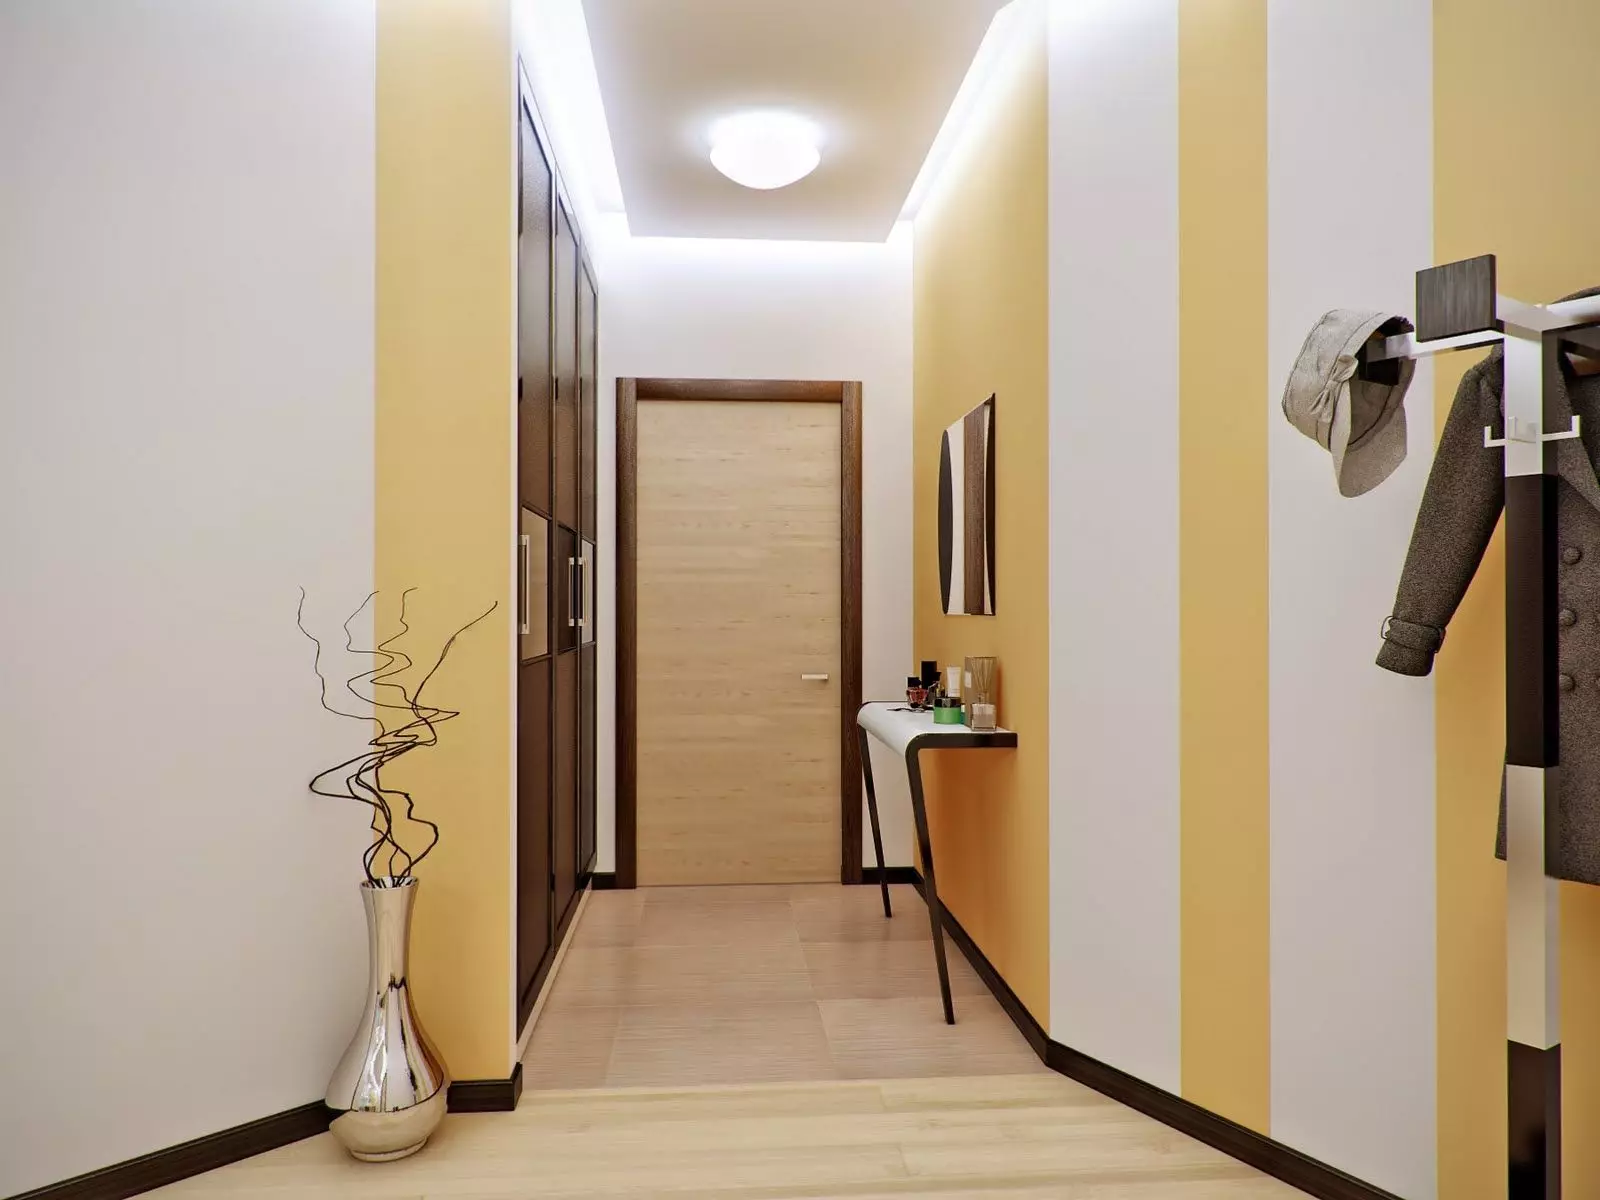 Hình nền kết hợp ở hành lang (49 ảnh): Thiết kế của hành lang với sự kết hợp của hình nền trong căn hộ. Làm thế nào để blot hình nền của hai màu đẹp? 9284_41